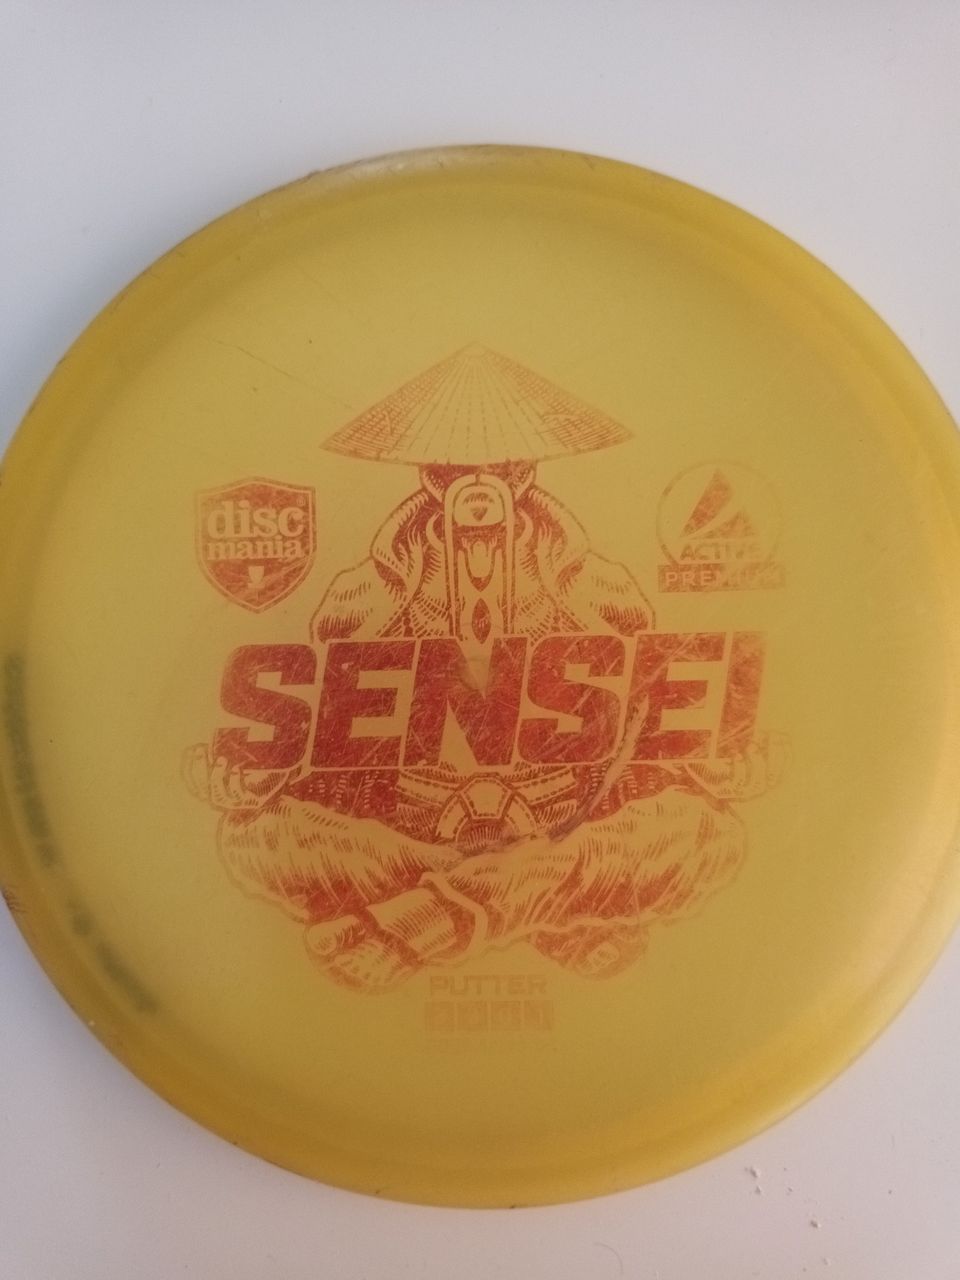 Sensei frisbee